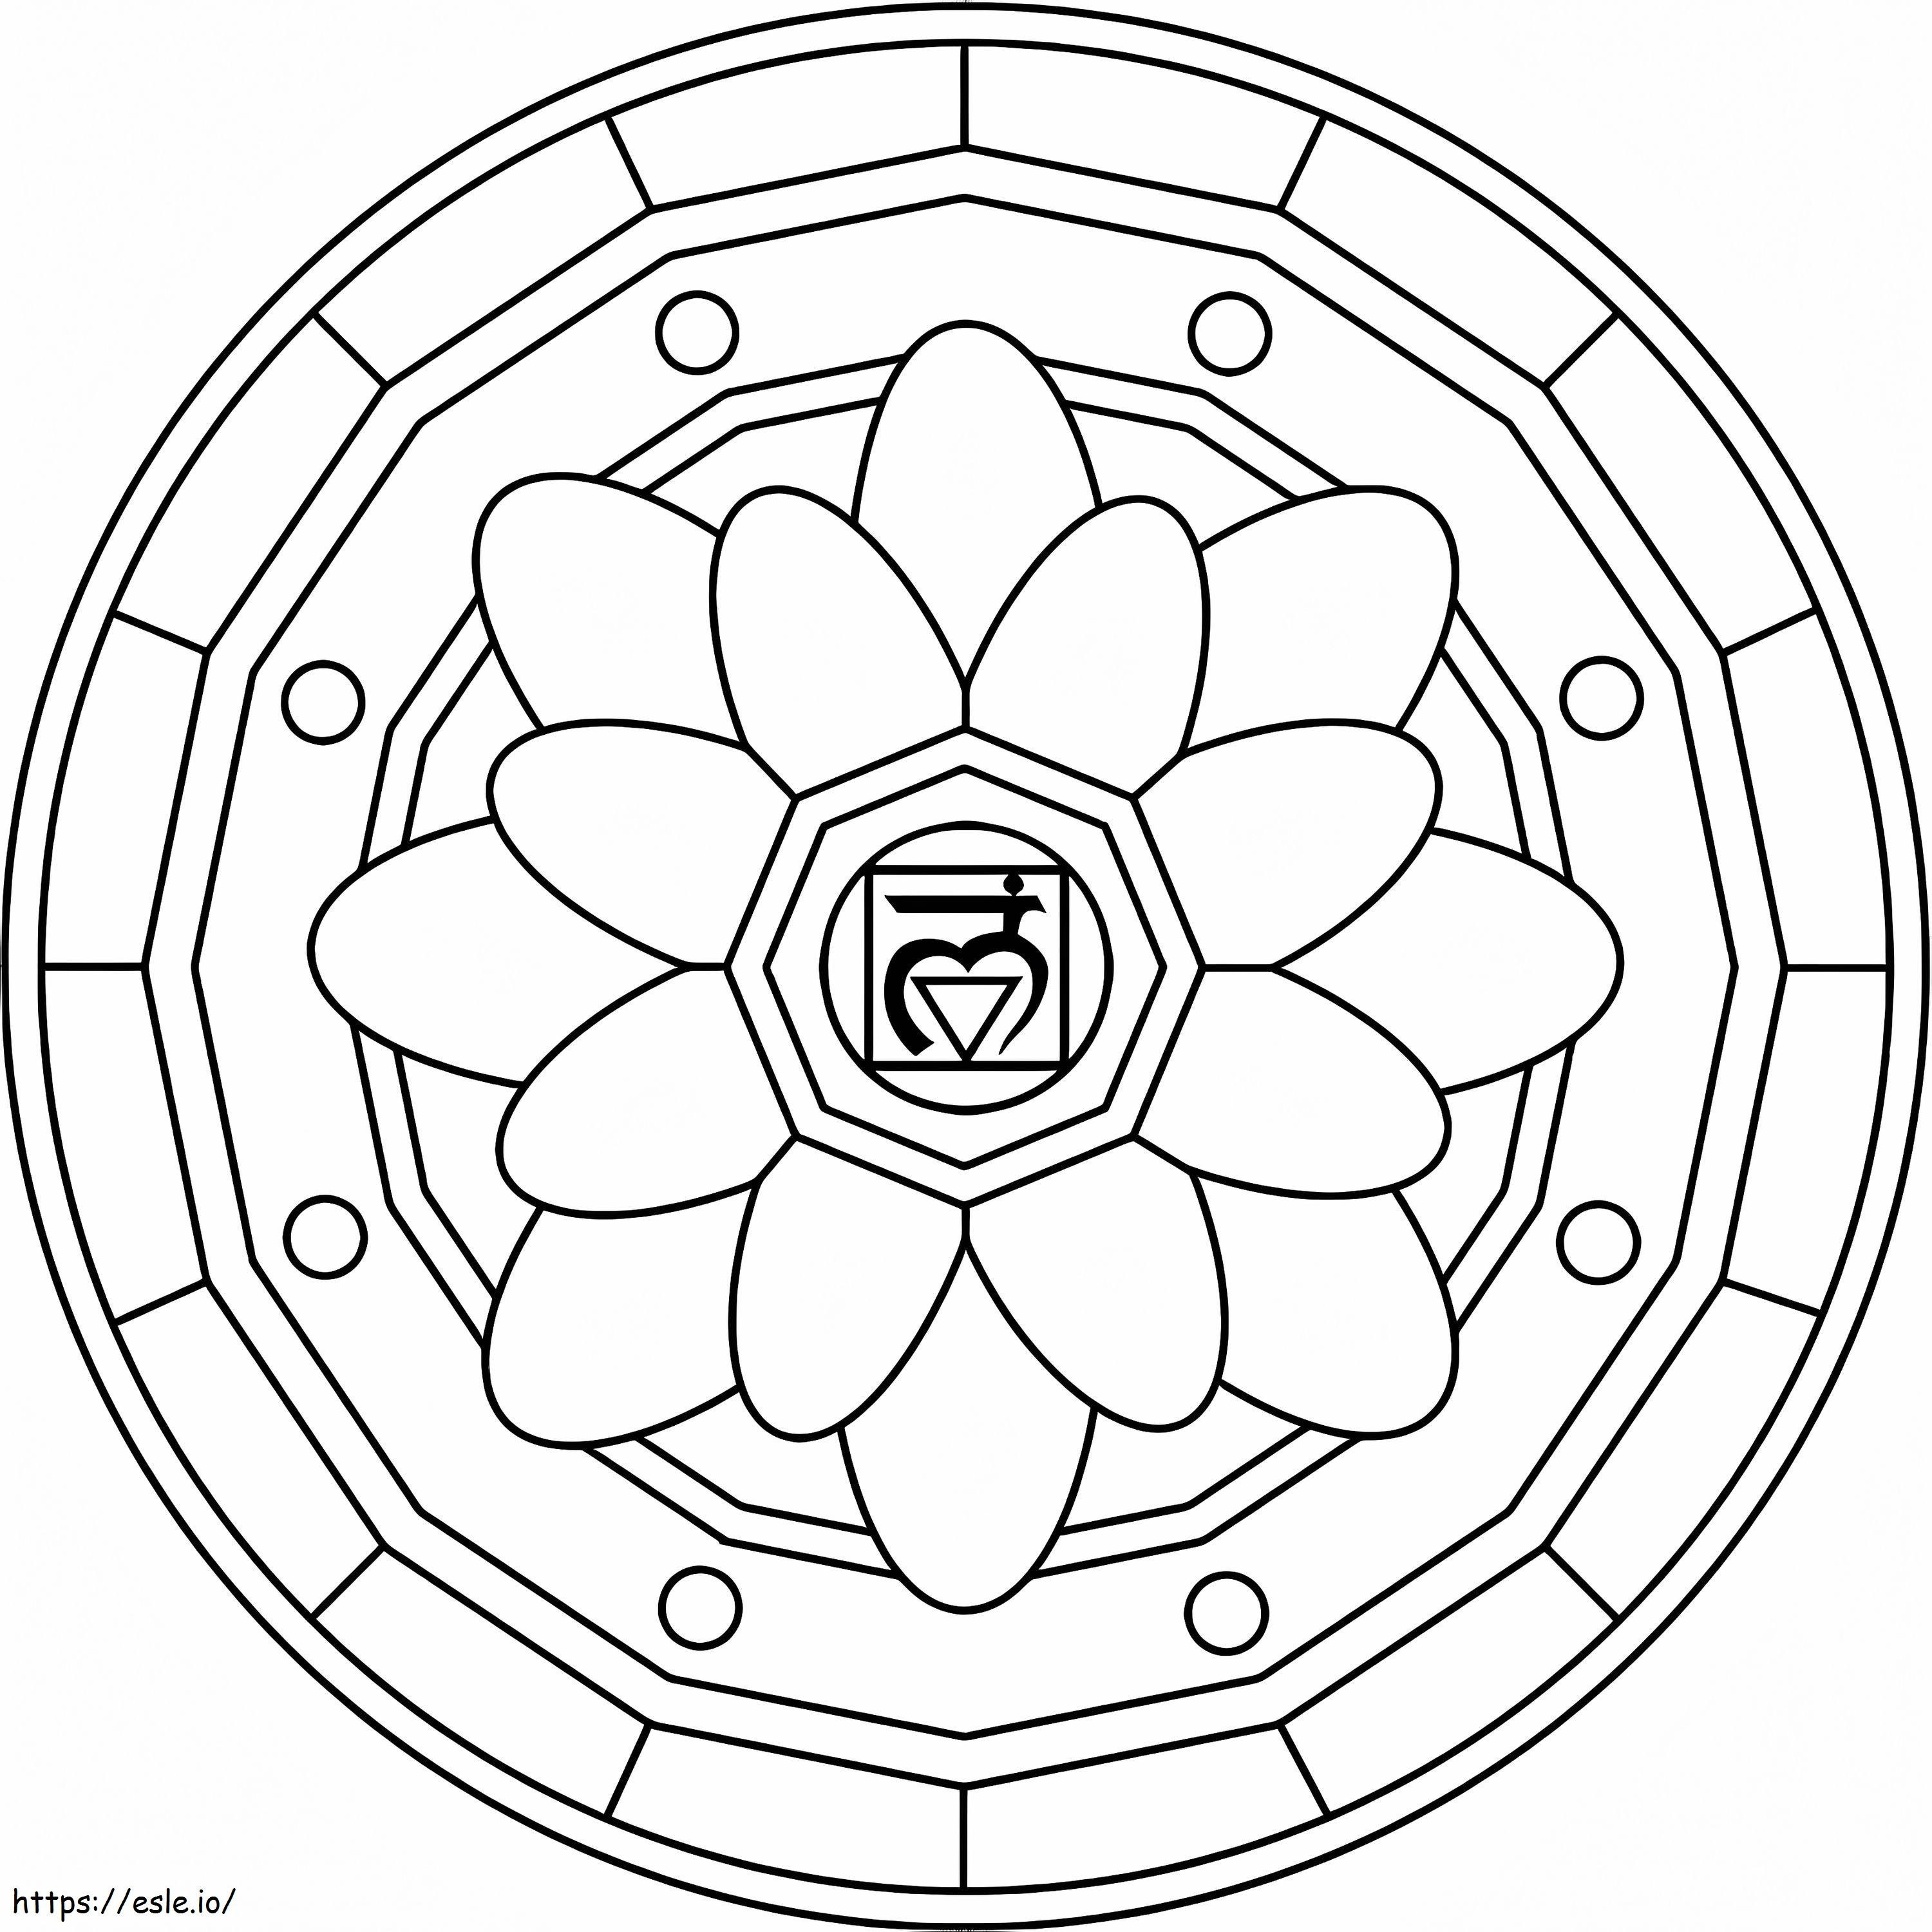 Coloriage Mandala Symbole Muladhara à imprimer dessin